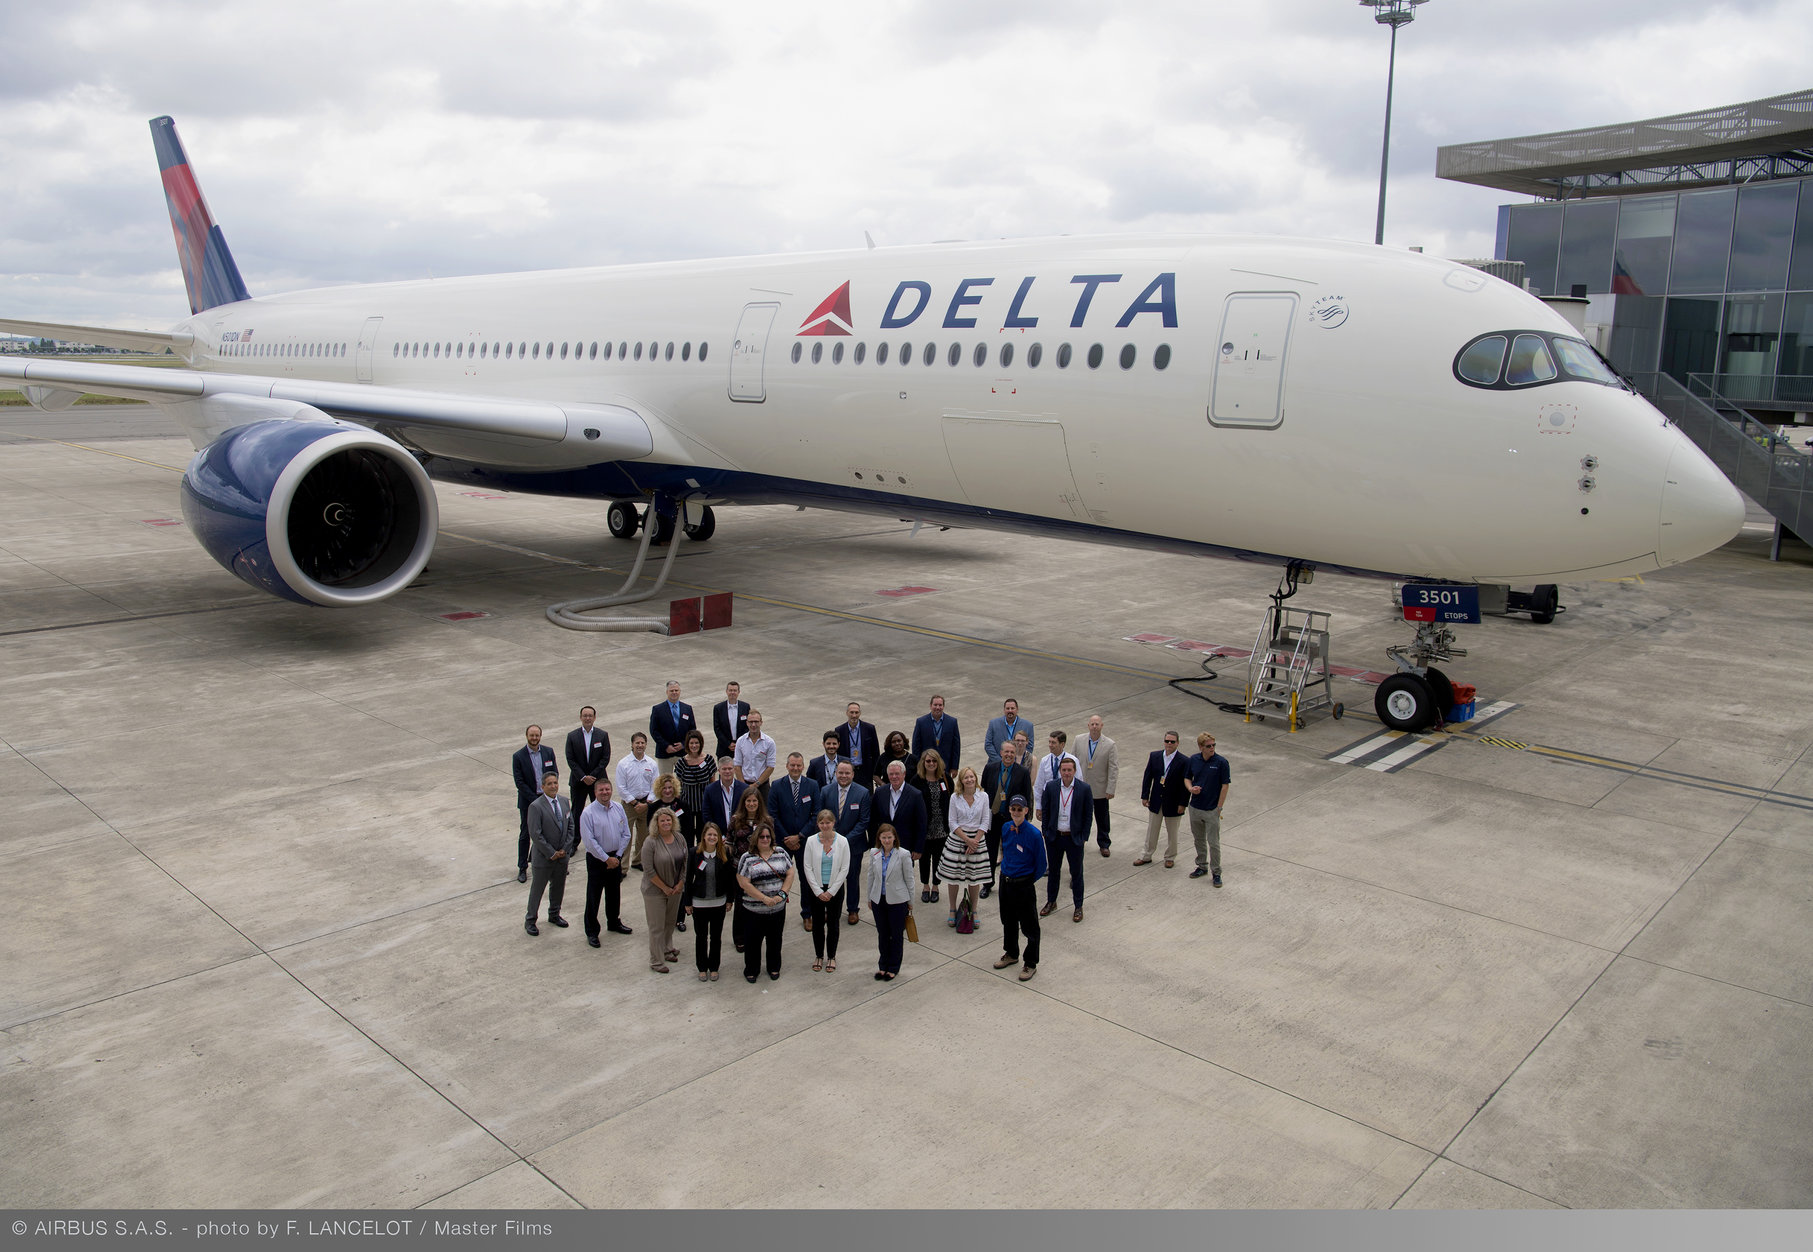 Delta reanuda vuelos a Argentina, Chile y Ecuador - Noticias de aviación, aeropuertos y aerolíneas